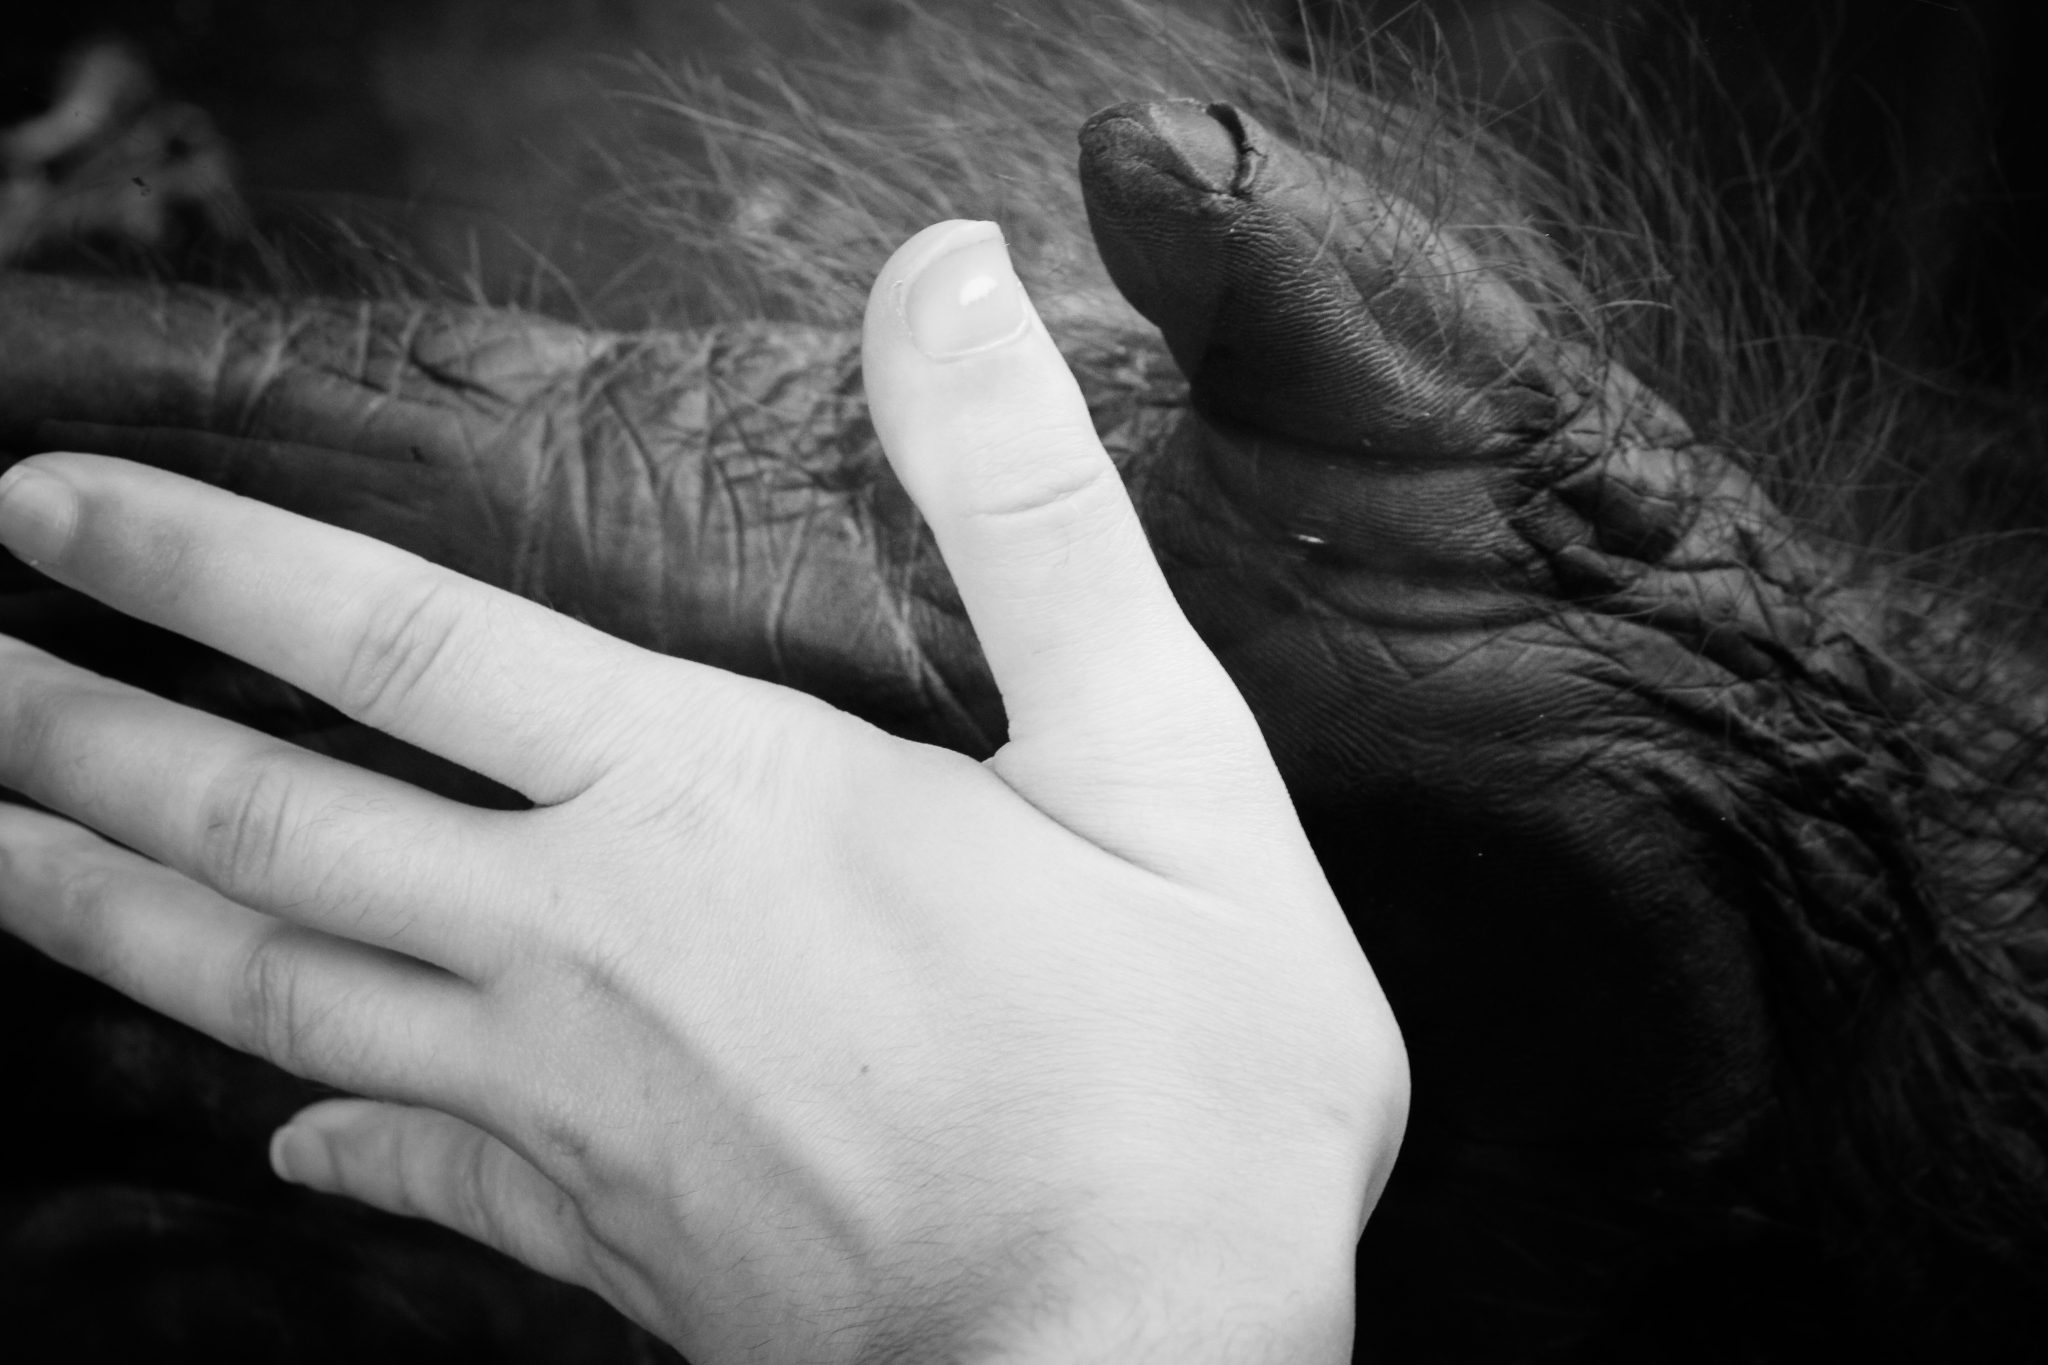 Ape and human hand